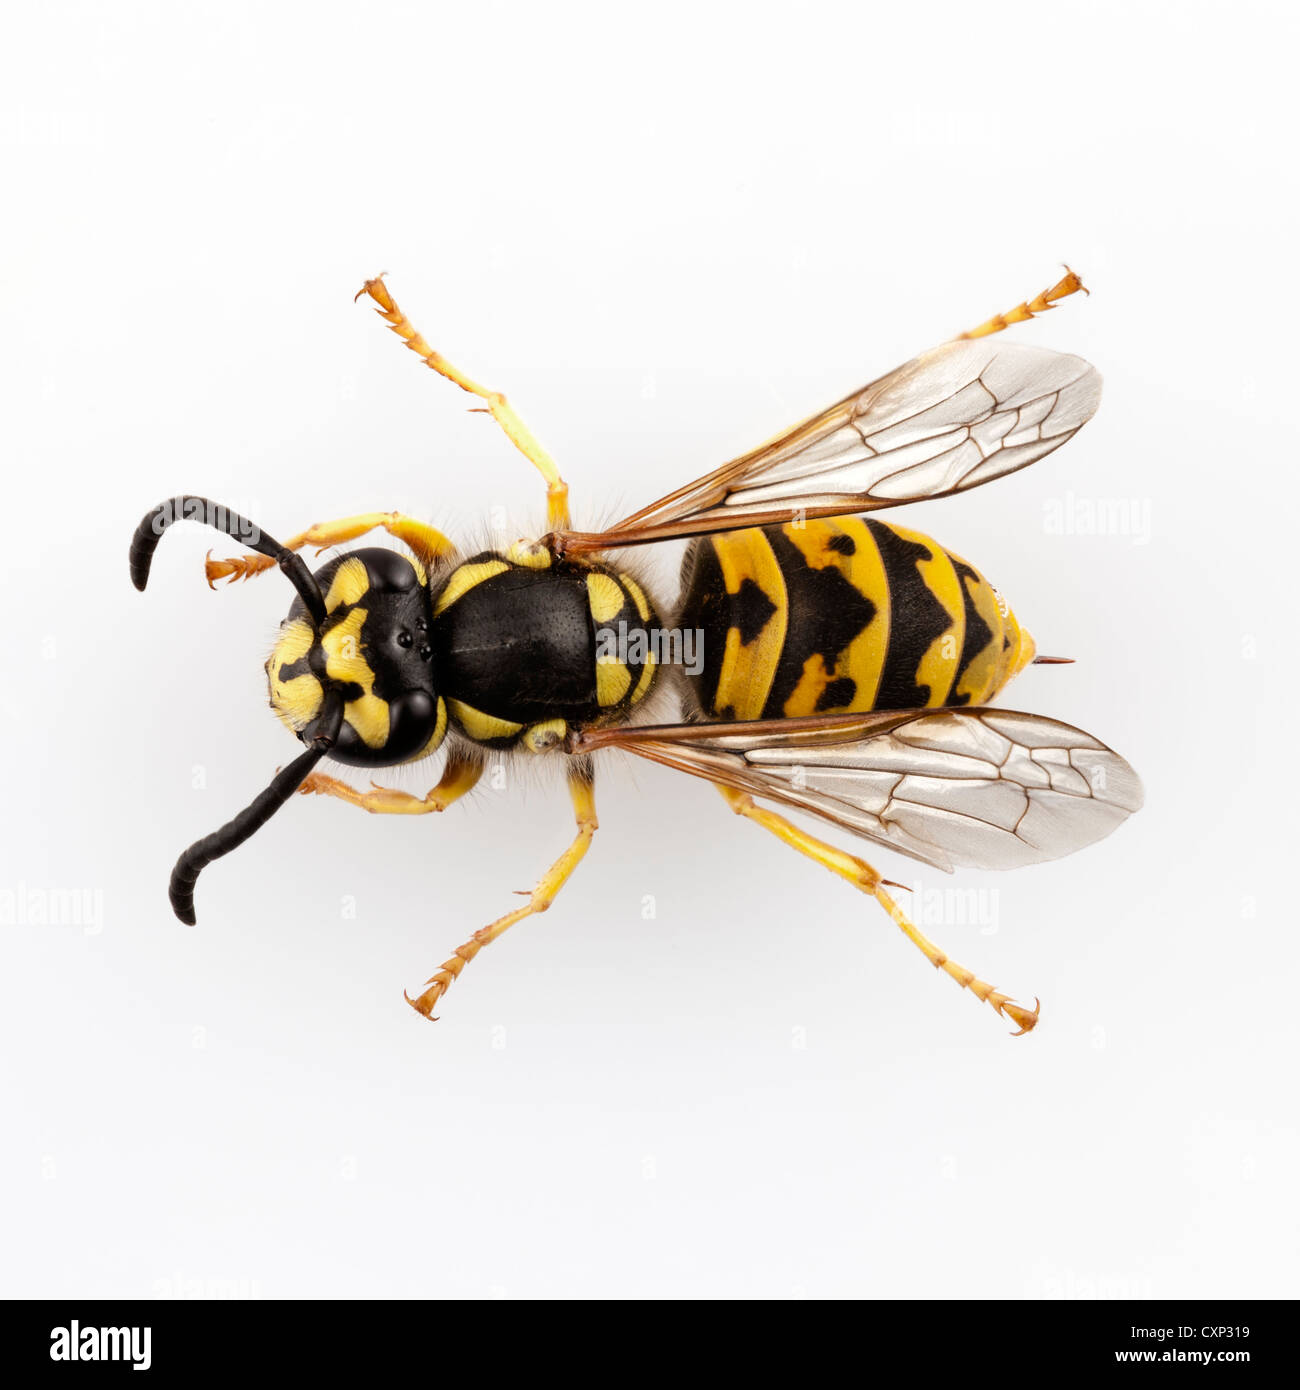 Wasp Vespula germanica specie isolati su sfondo bianco Foto Stock